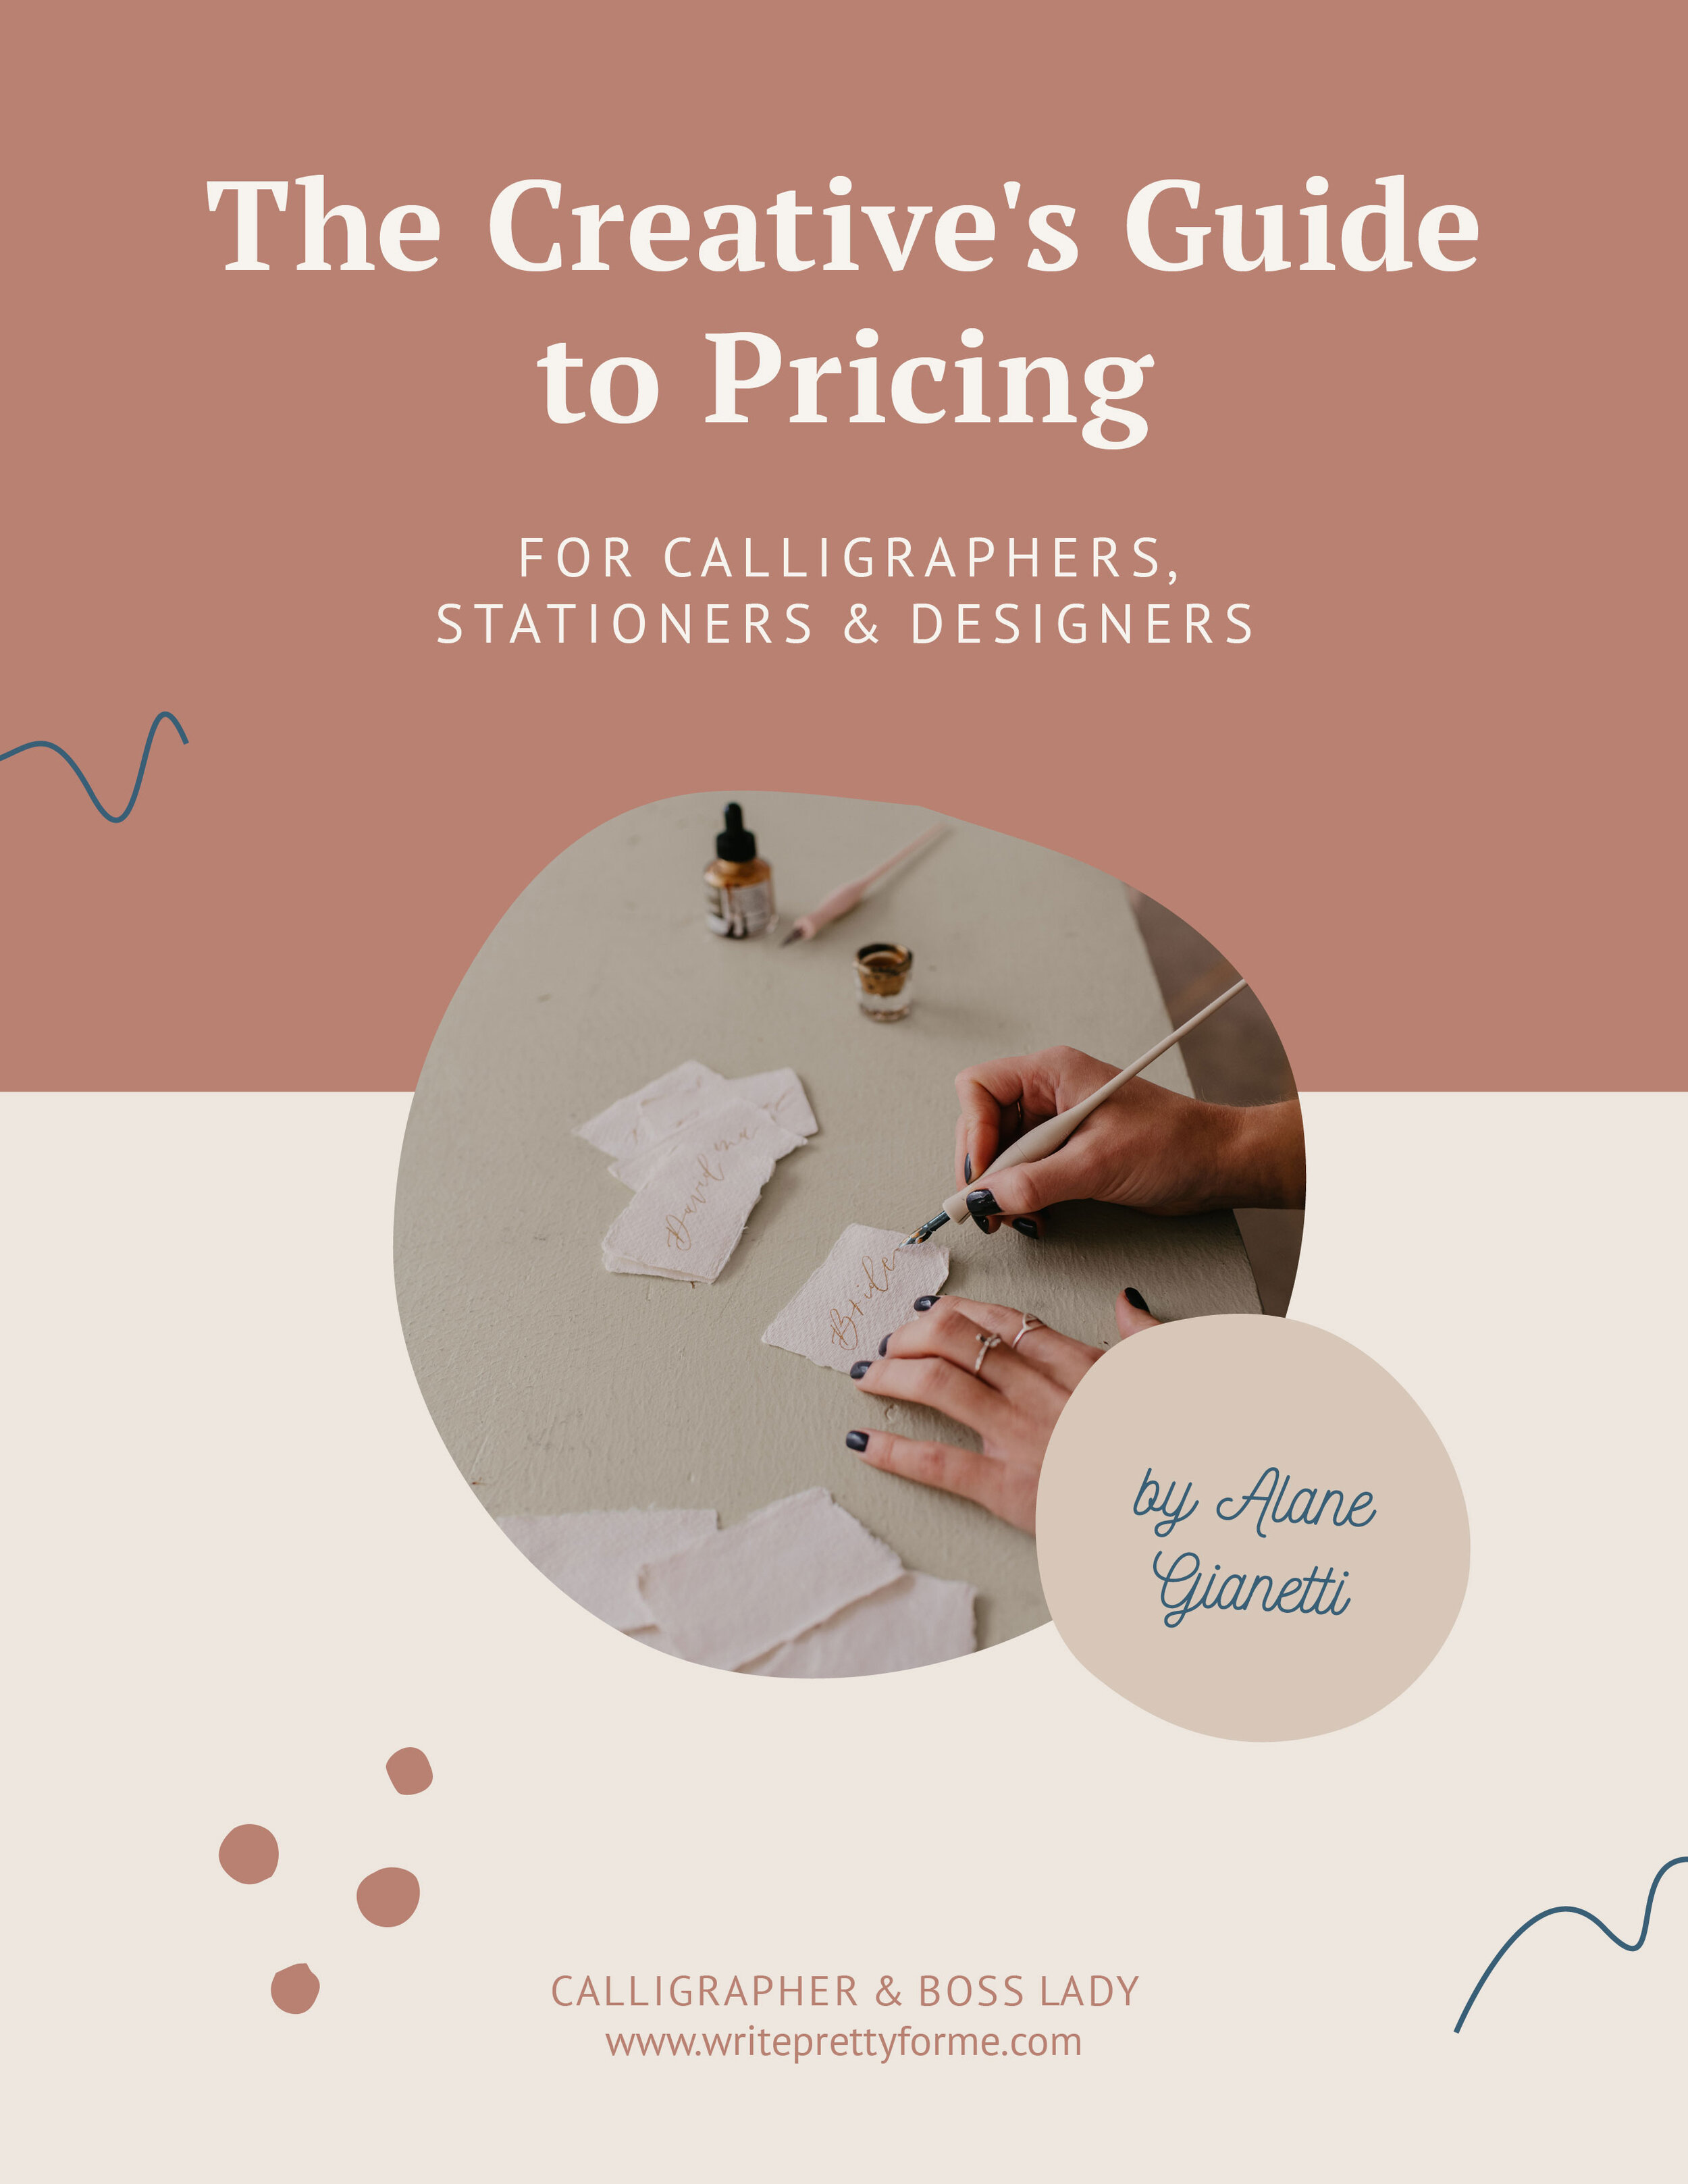 创意's-Guide-to-Pricing——Calligraphy-Business-Book Write-Pretty-for-Me.jpg